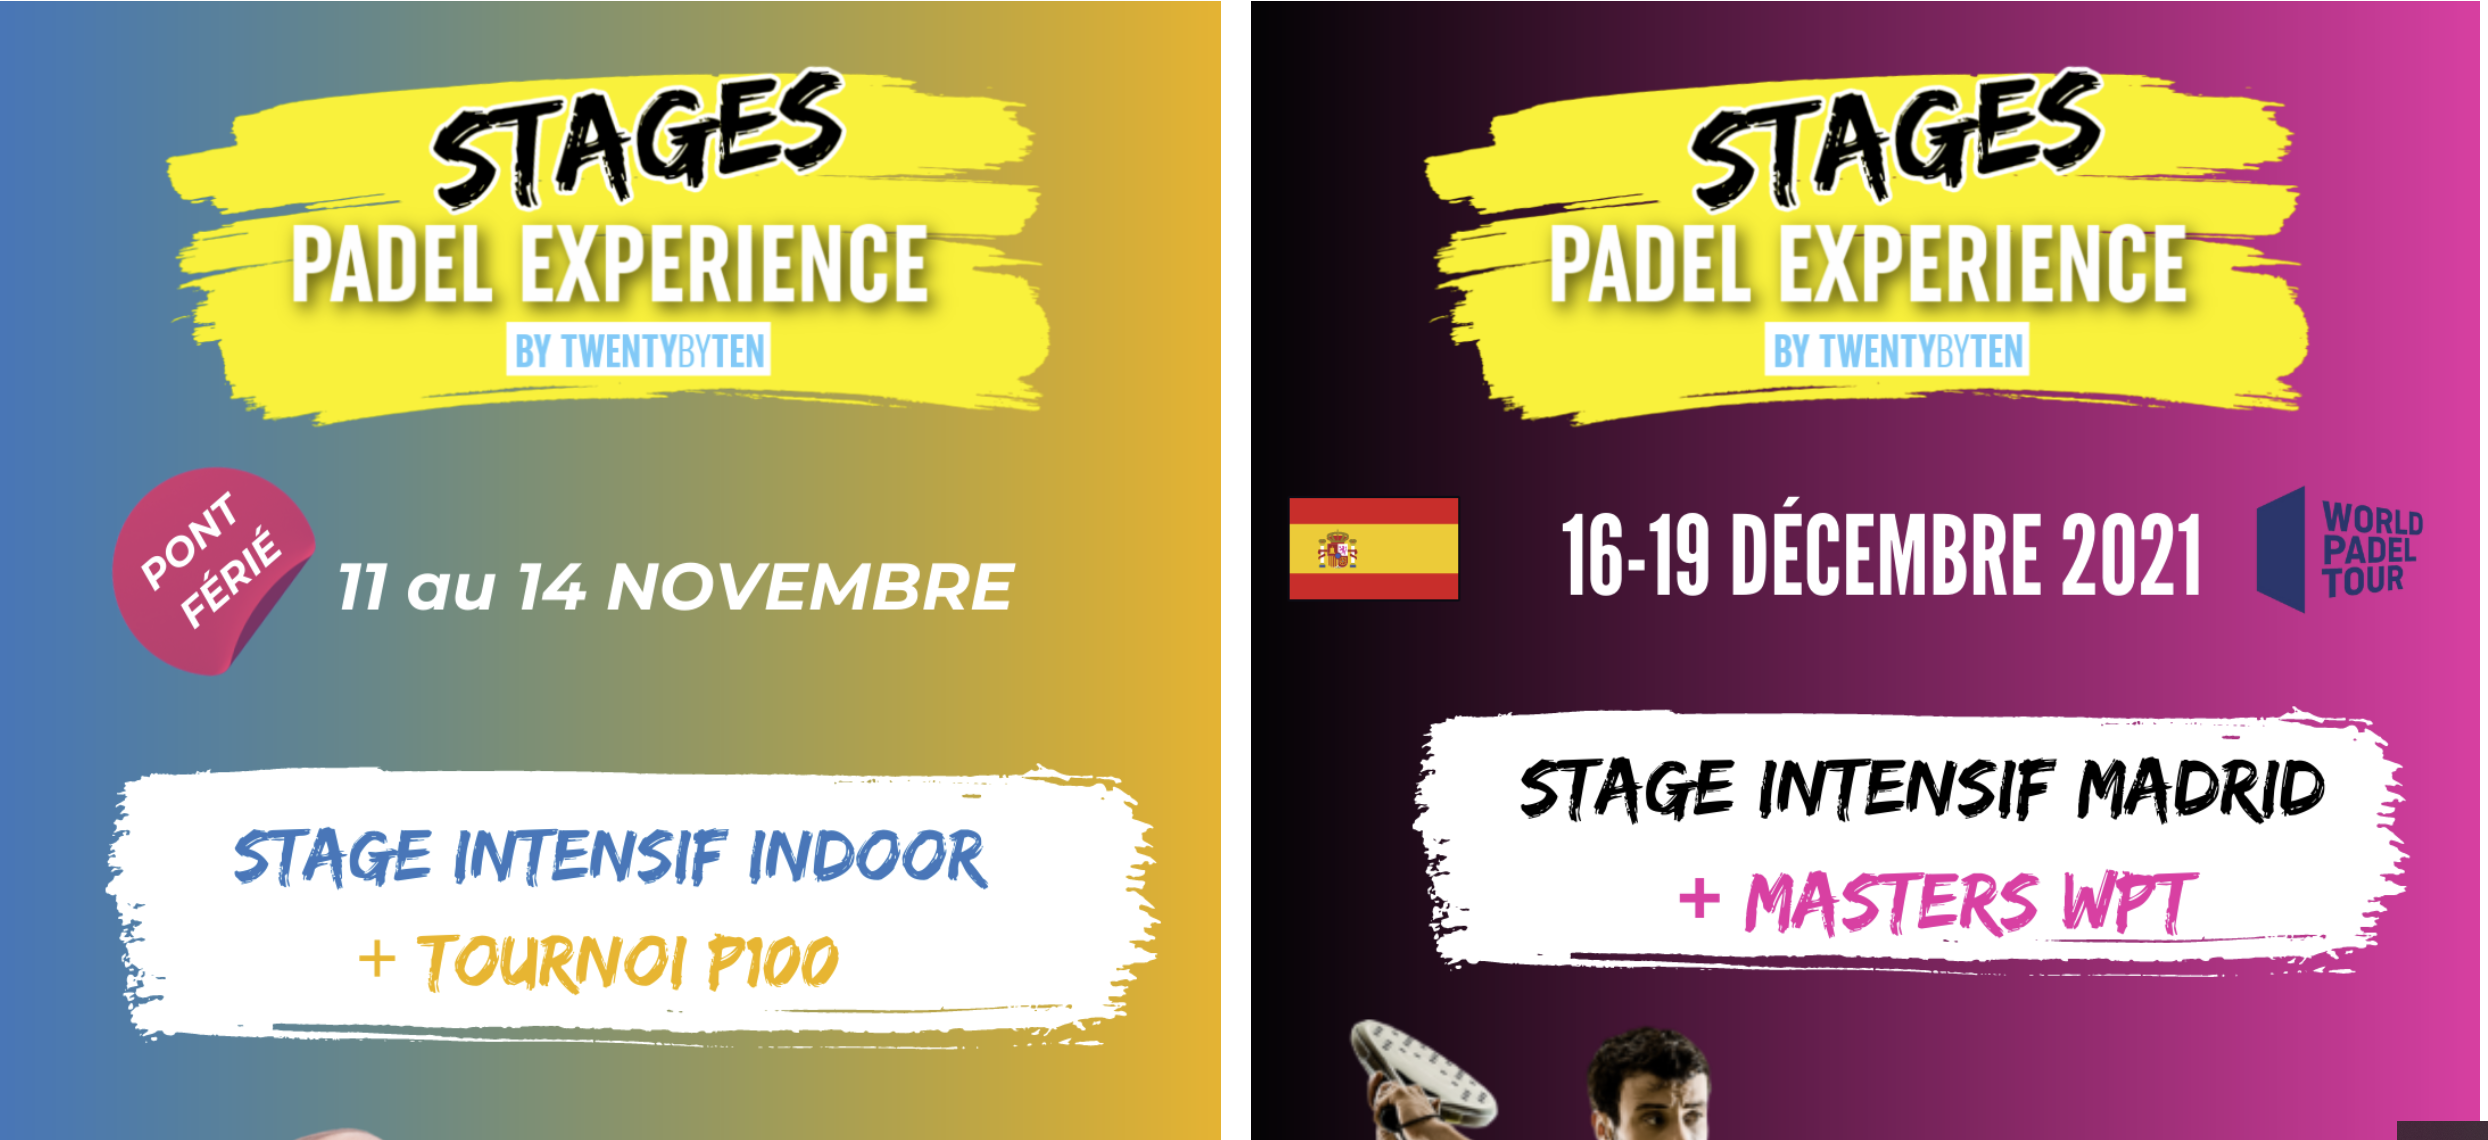 Padel Experiencia: 2 prácticas padel en Lyon y Madrid